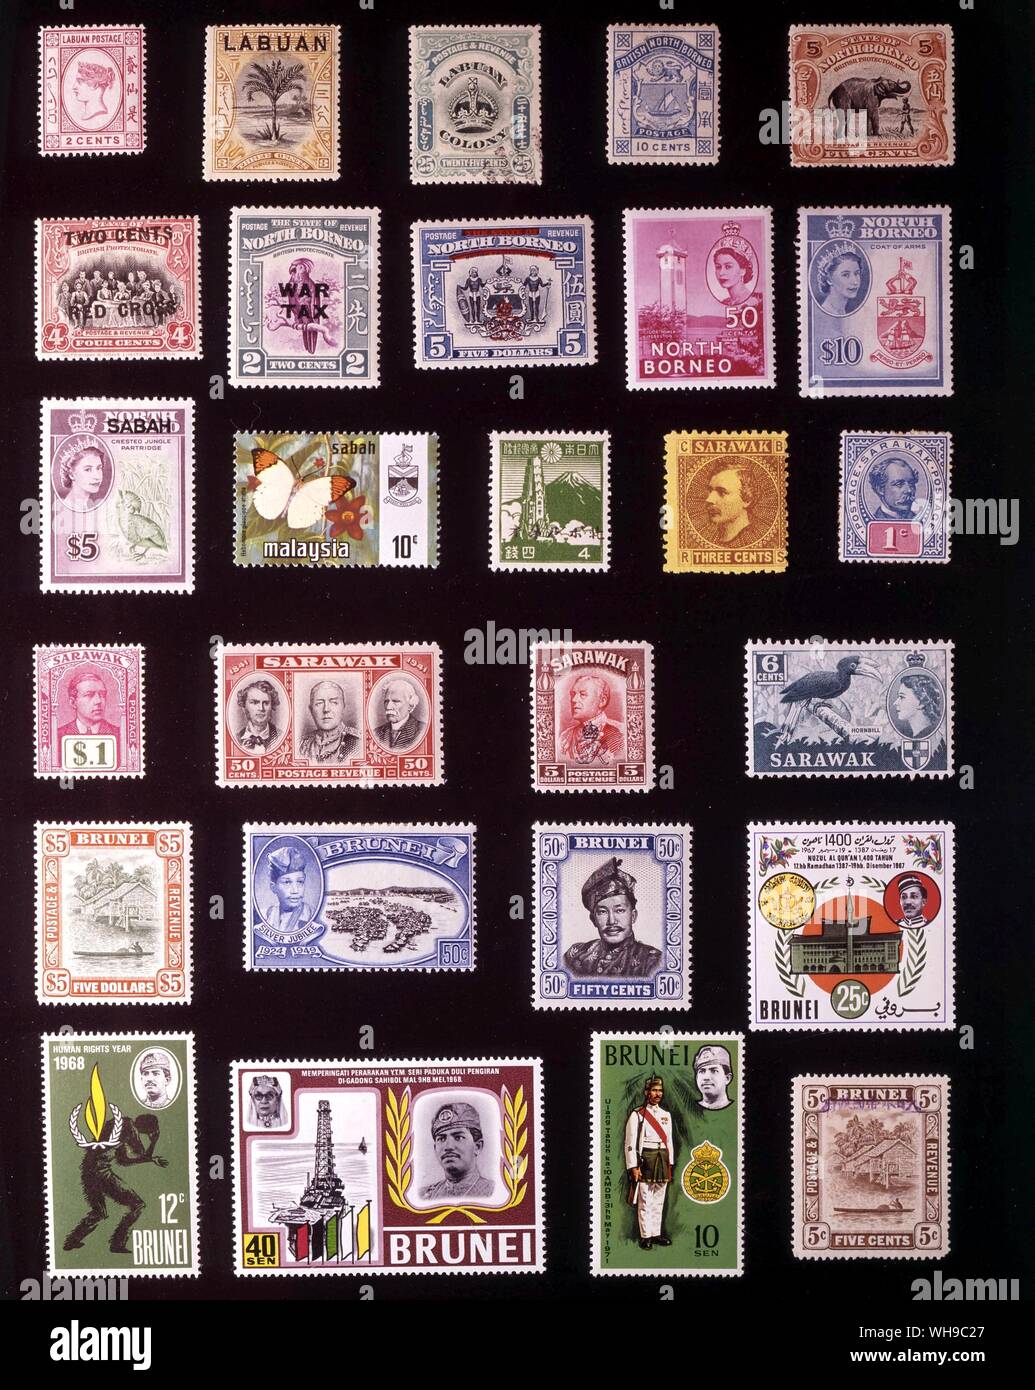 ASIA - BRITISH BORNEO: (left to right) 1. Labuan, 2 cents, 1885, 2. Labuan, 3 cents, 1897, 3. Labuan, 25 cents, 1902, 4. British North Borneo, 10 cents, 1886, 5. State of North Borneo, 5 cents, 1909, 6. North Borneo, 4 + 2 cents, 1918, 7. North Borneo, 2 cents, 1941, 8. North Borneo, 5 dollars, 1947, 9. North Borneo, 50 cents, 1954, 10. North Borneo, 10 dollars, 1961, 11. Sabah, 5 dollars, 1964, 12. Sabah, 10 cents, 1971, 13. Japanese occupation of North Borneo, 4 sen, 1945, 14. Sarawak, 3 cents, 1871, 15. Sarawak, 1 cent, 1901, 16. Sarawak, 1 dollar, 1918, 17. Sarawak, 50 cents, 1946, 18. Stock Photo